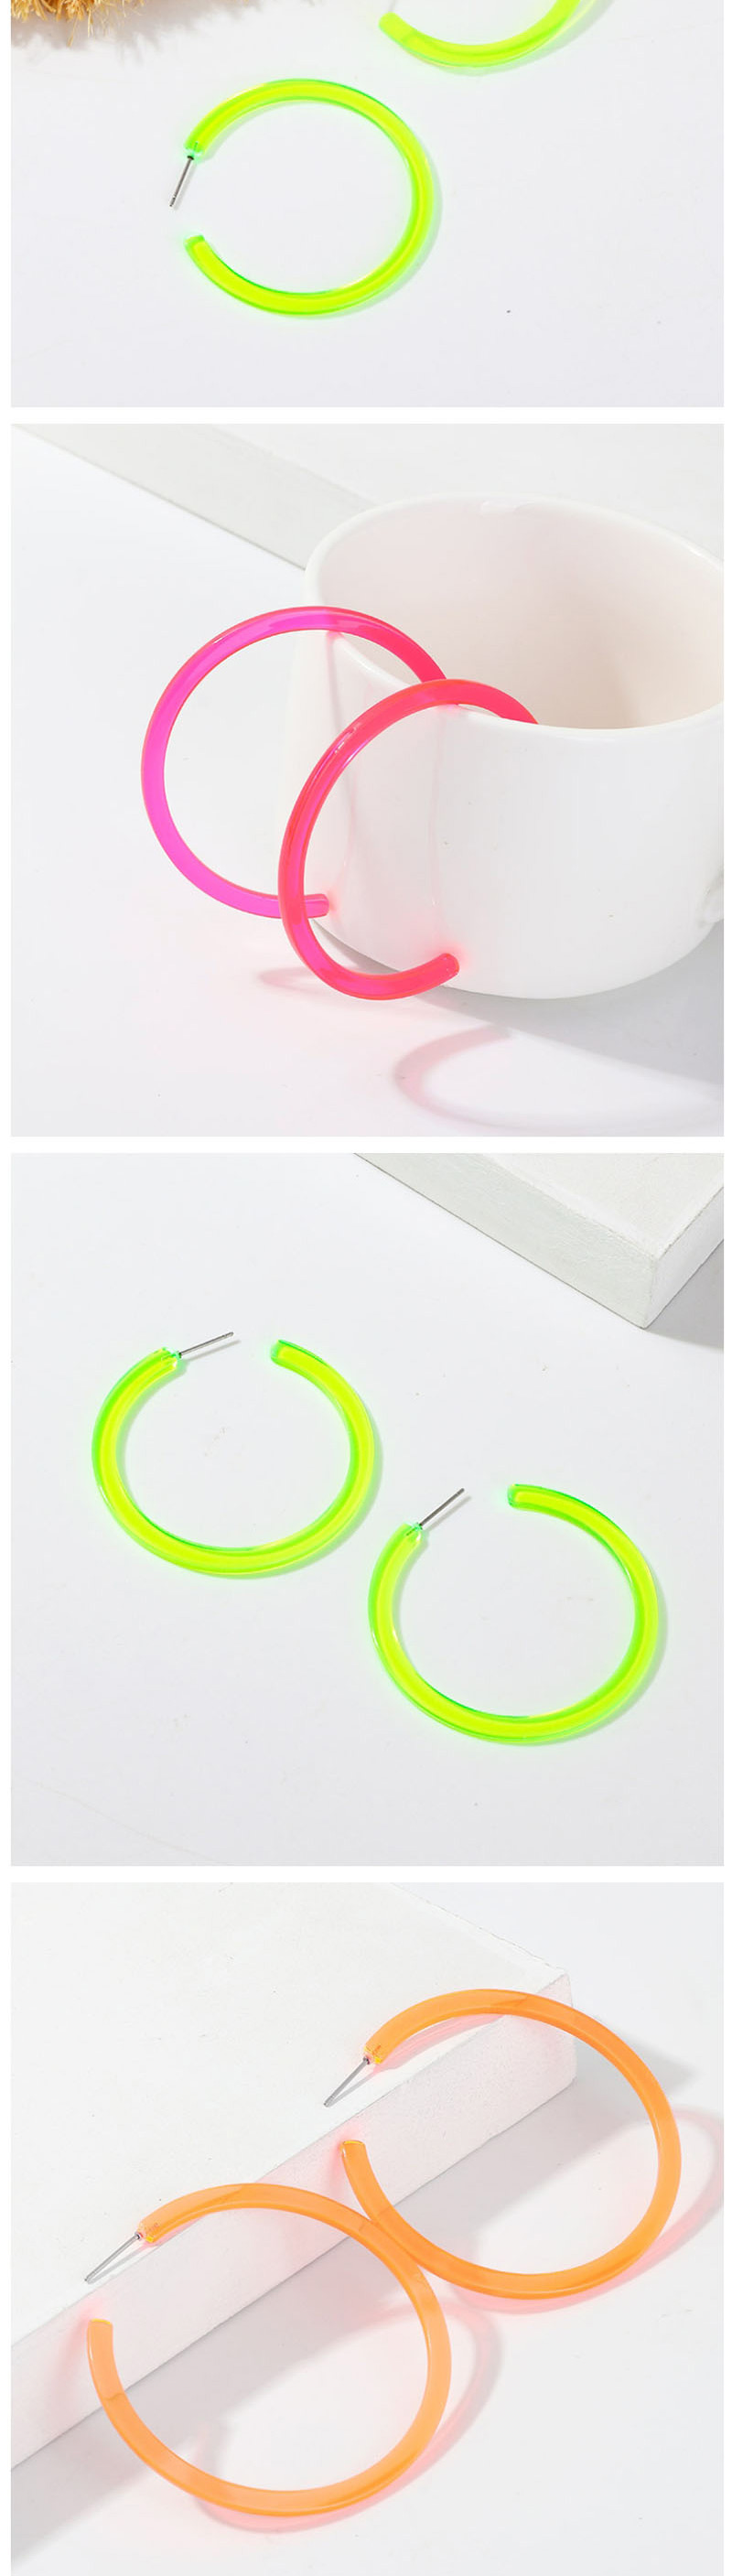 Fashion Green C-shaped Star Fluorescent Earrings,Drop Earrings